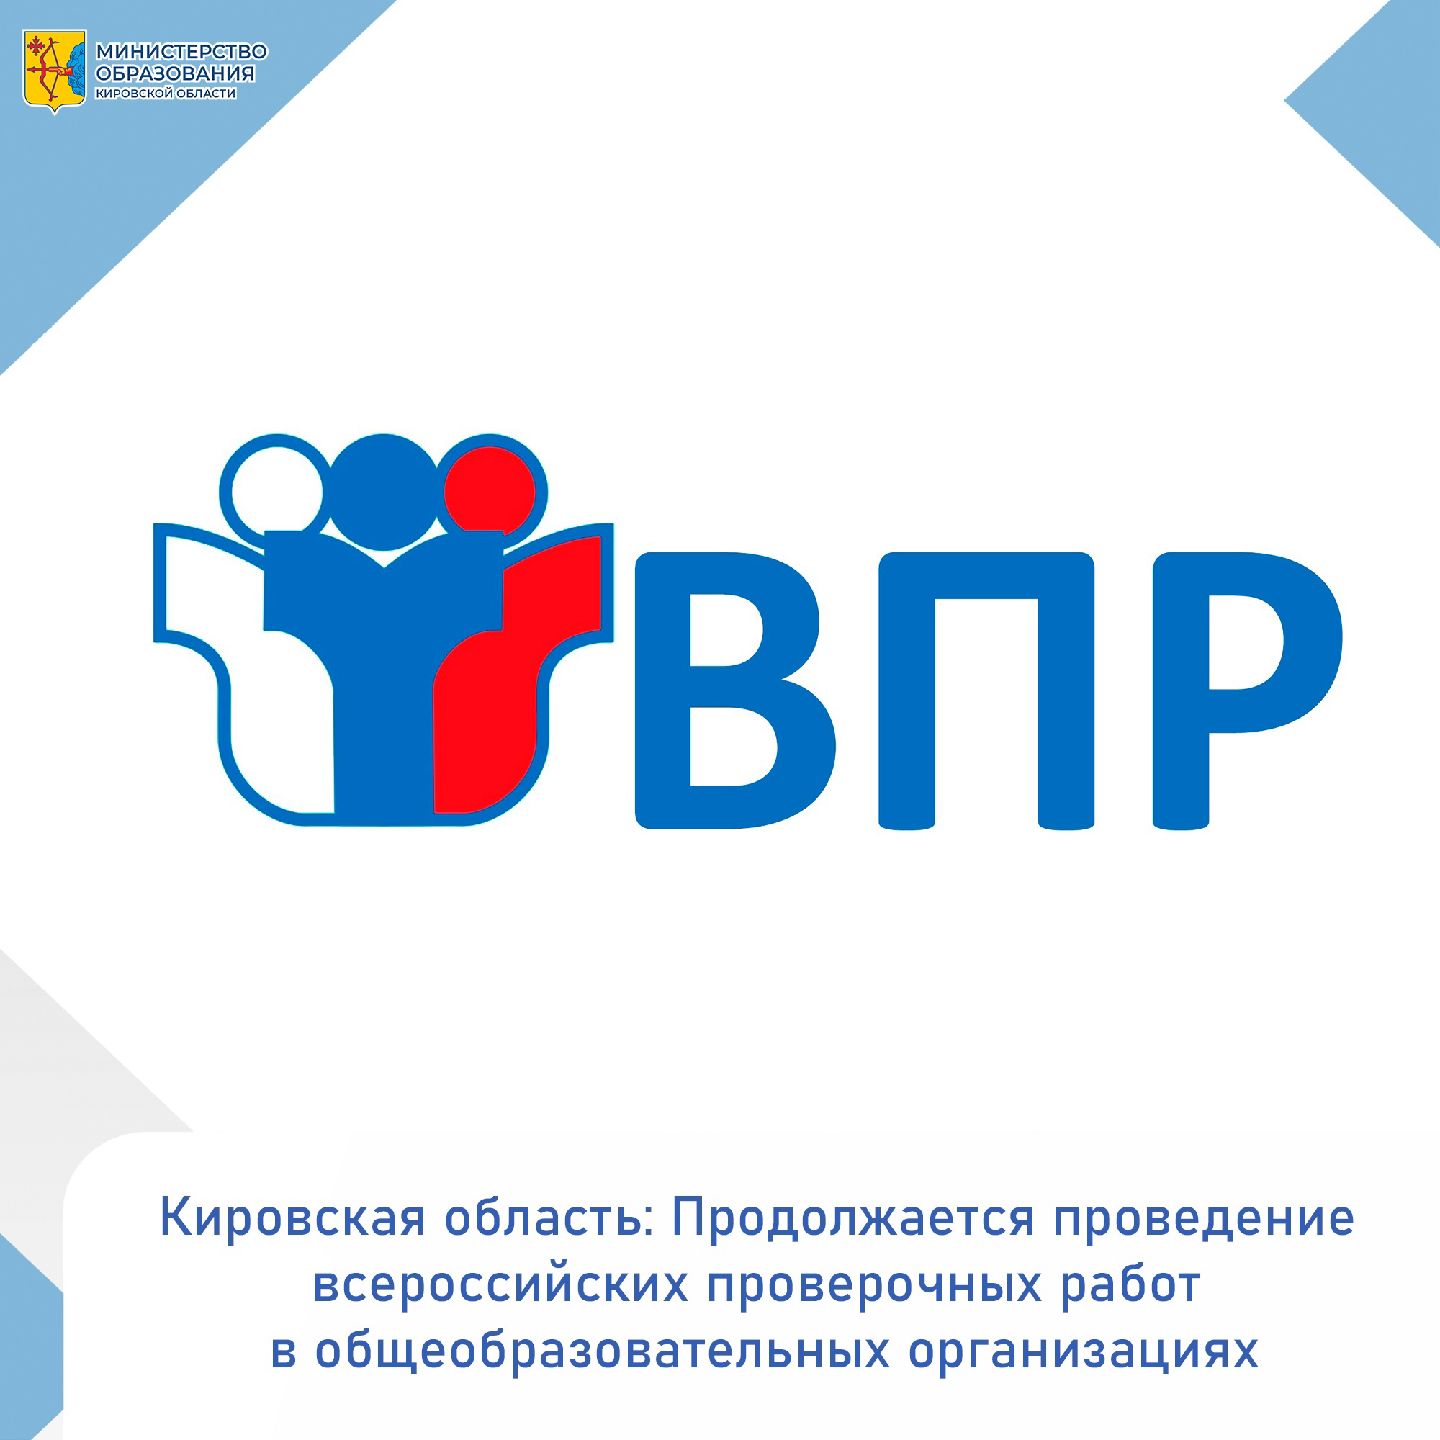 Кировская область: Продолжается проведение всероссийских проверочных работ в общеобразовательных организациях .